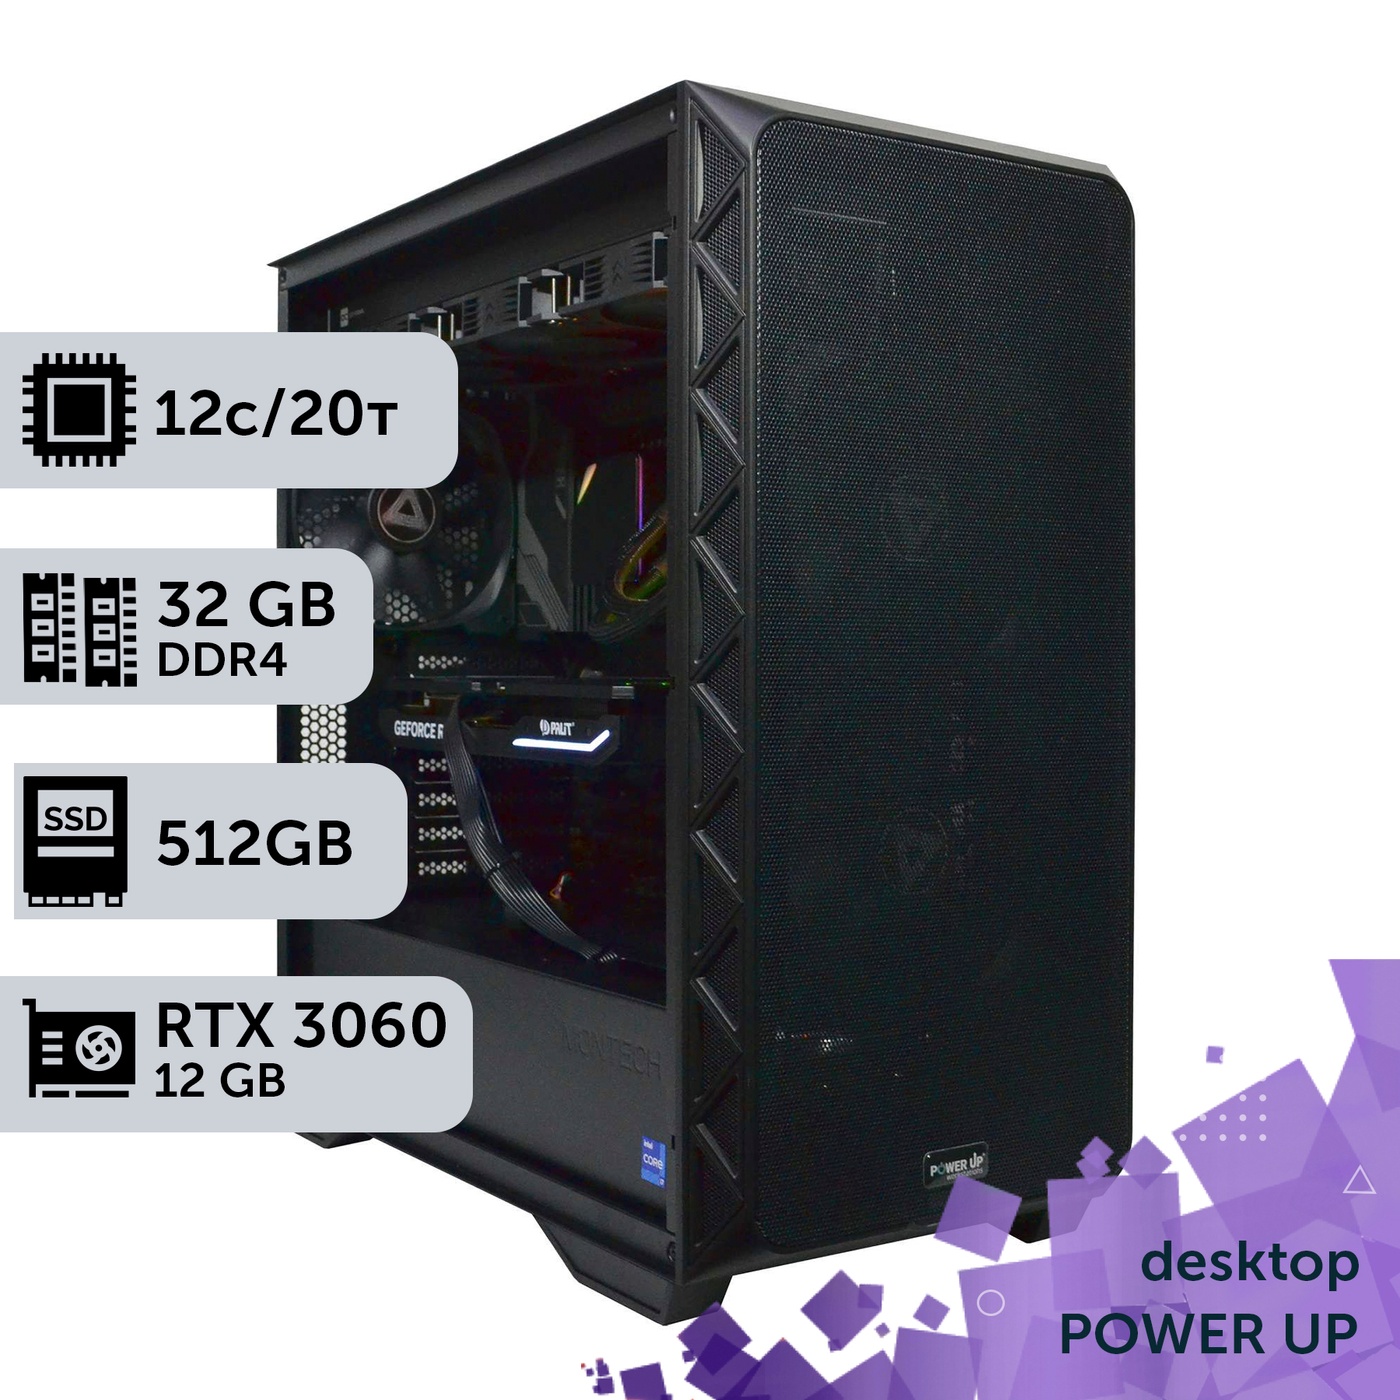 Рабочая станция PowerUp Desktop #114 Core i7 12700K/32 GB/HDD 1 TB/SSD 512GB/GeForce RTX 3060 12GB